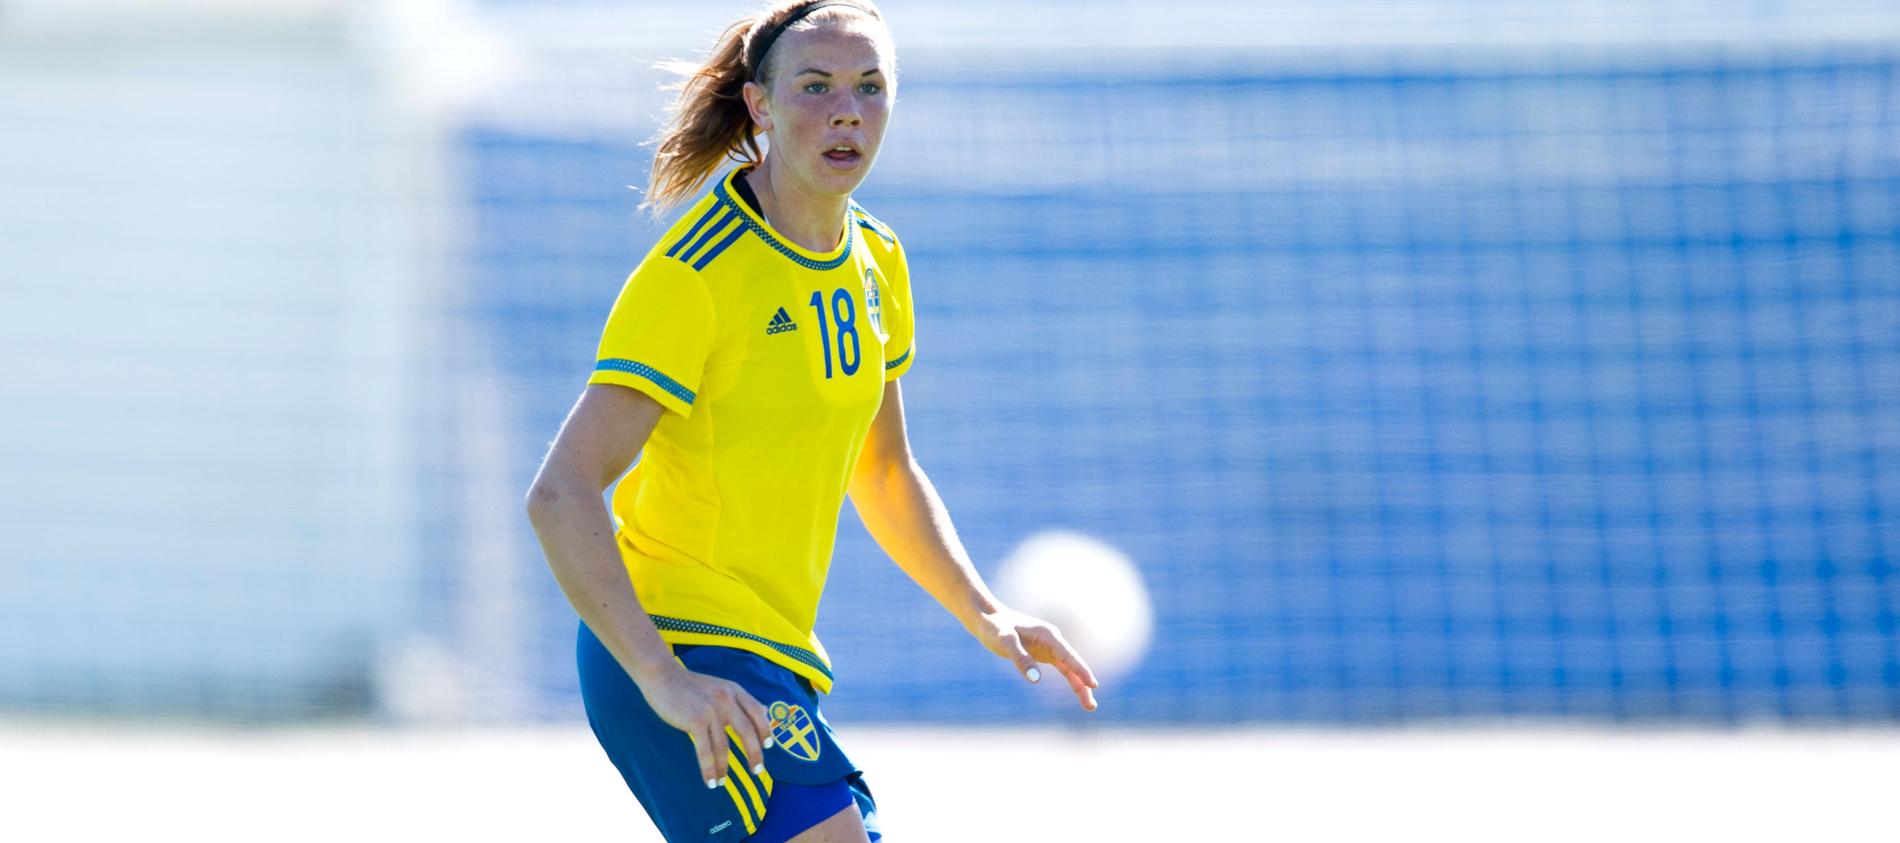 Jessica Samuelsson
Klubb: Linköping
Född: 1992-01-30
Landskamper(mål): 21(0)